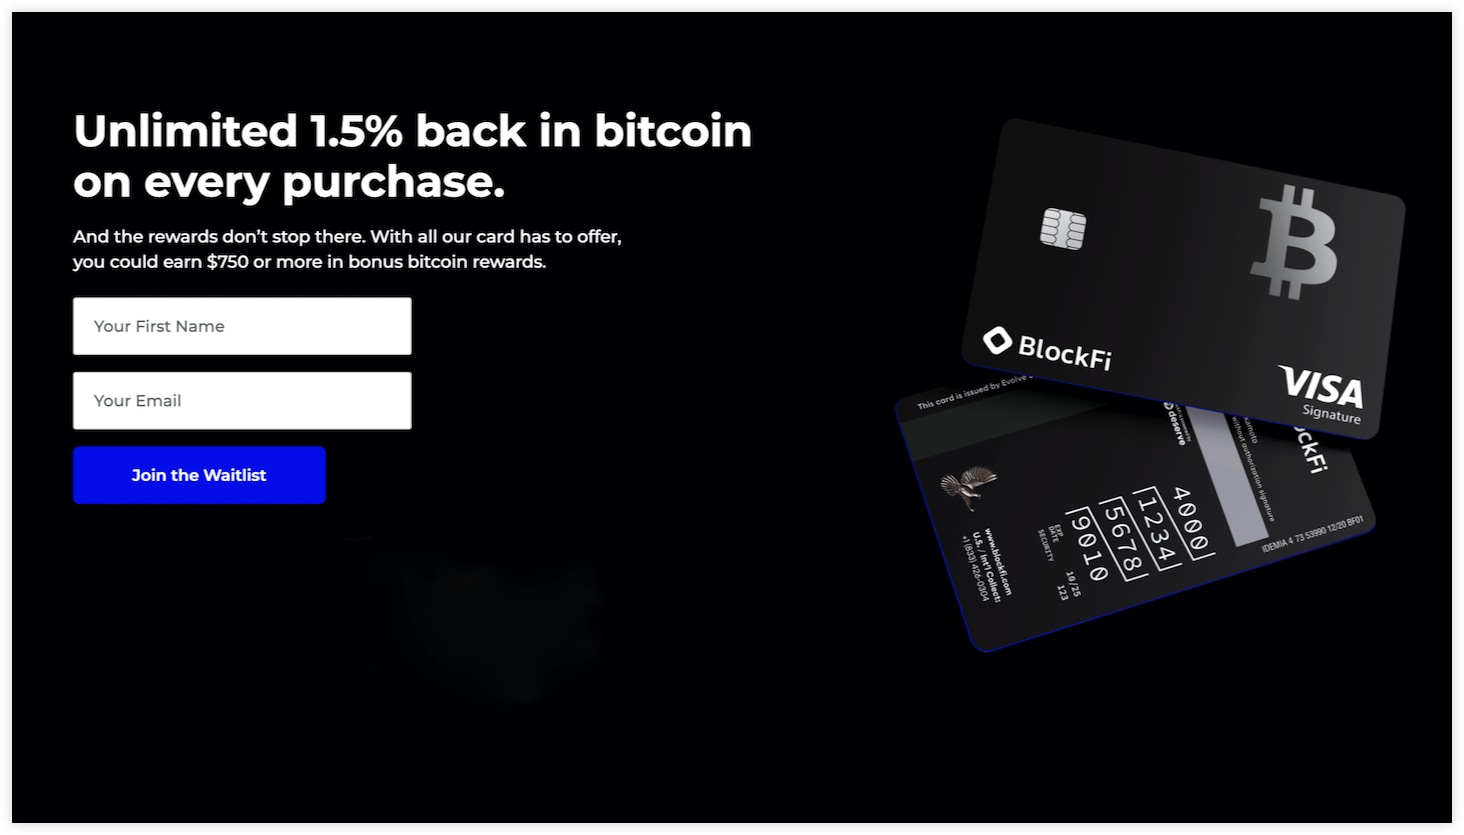 BlockFiが発行するビットコインクレジットカード、申し込み画面のスクリーンショット